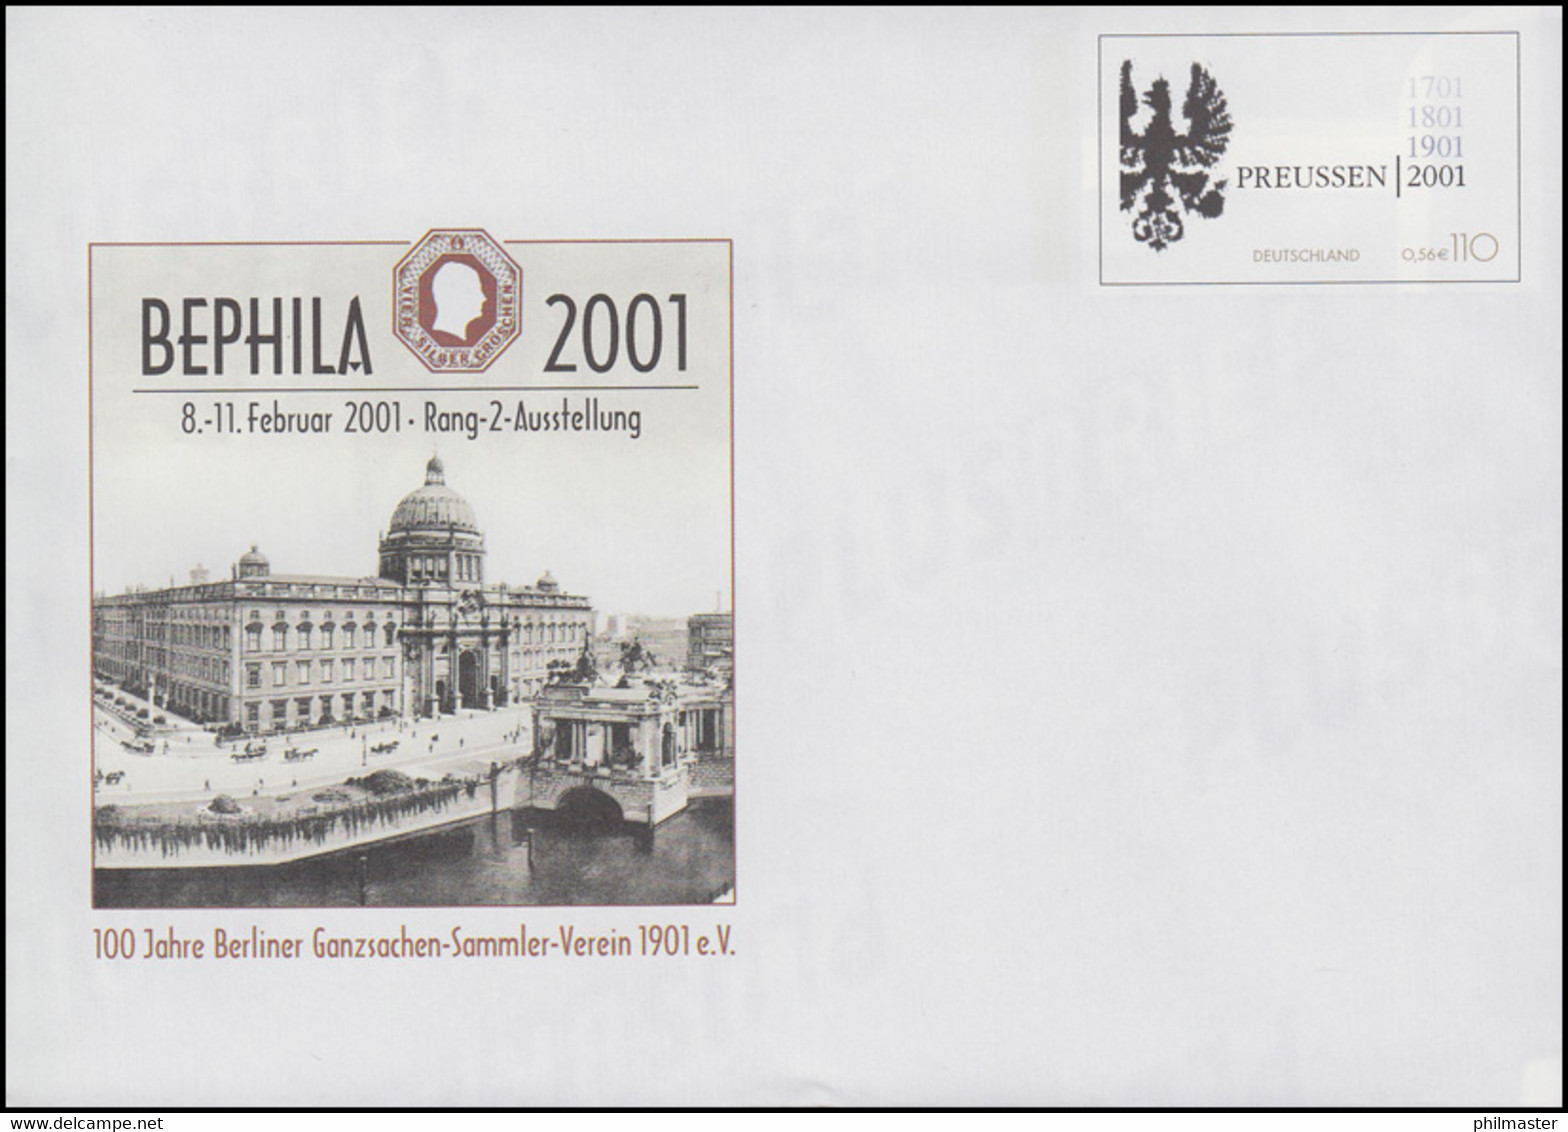 USo 23 BEPHILA Berlin - 300 Jahre Preußen 2001, Postfrisch - Enveloppes - Neuves